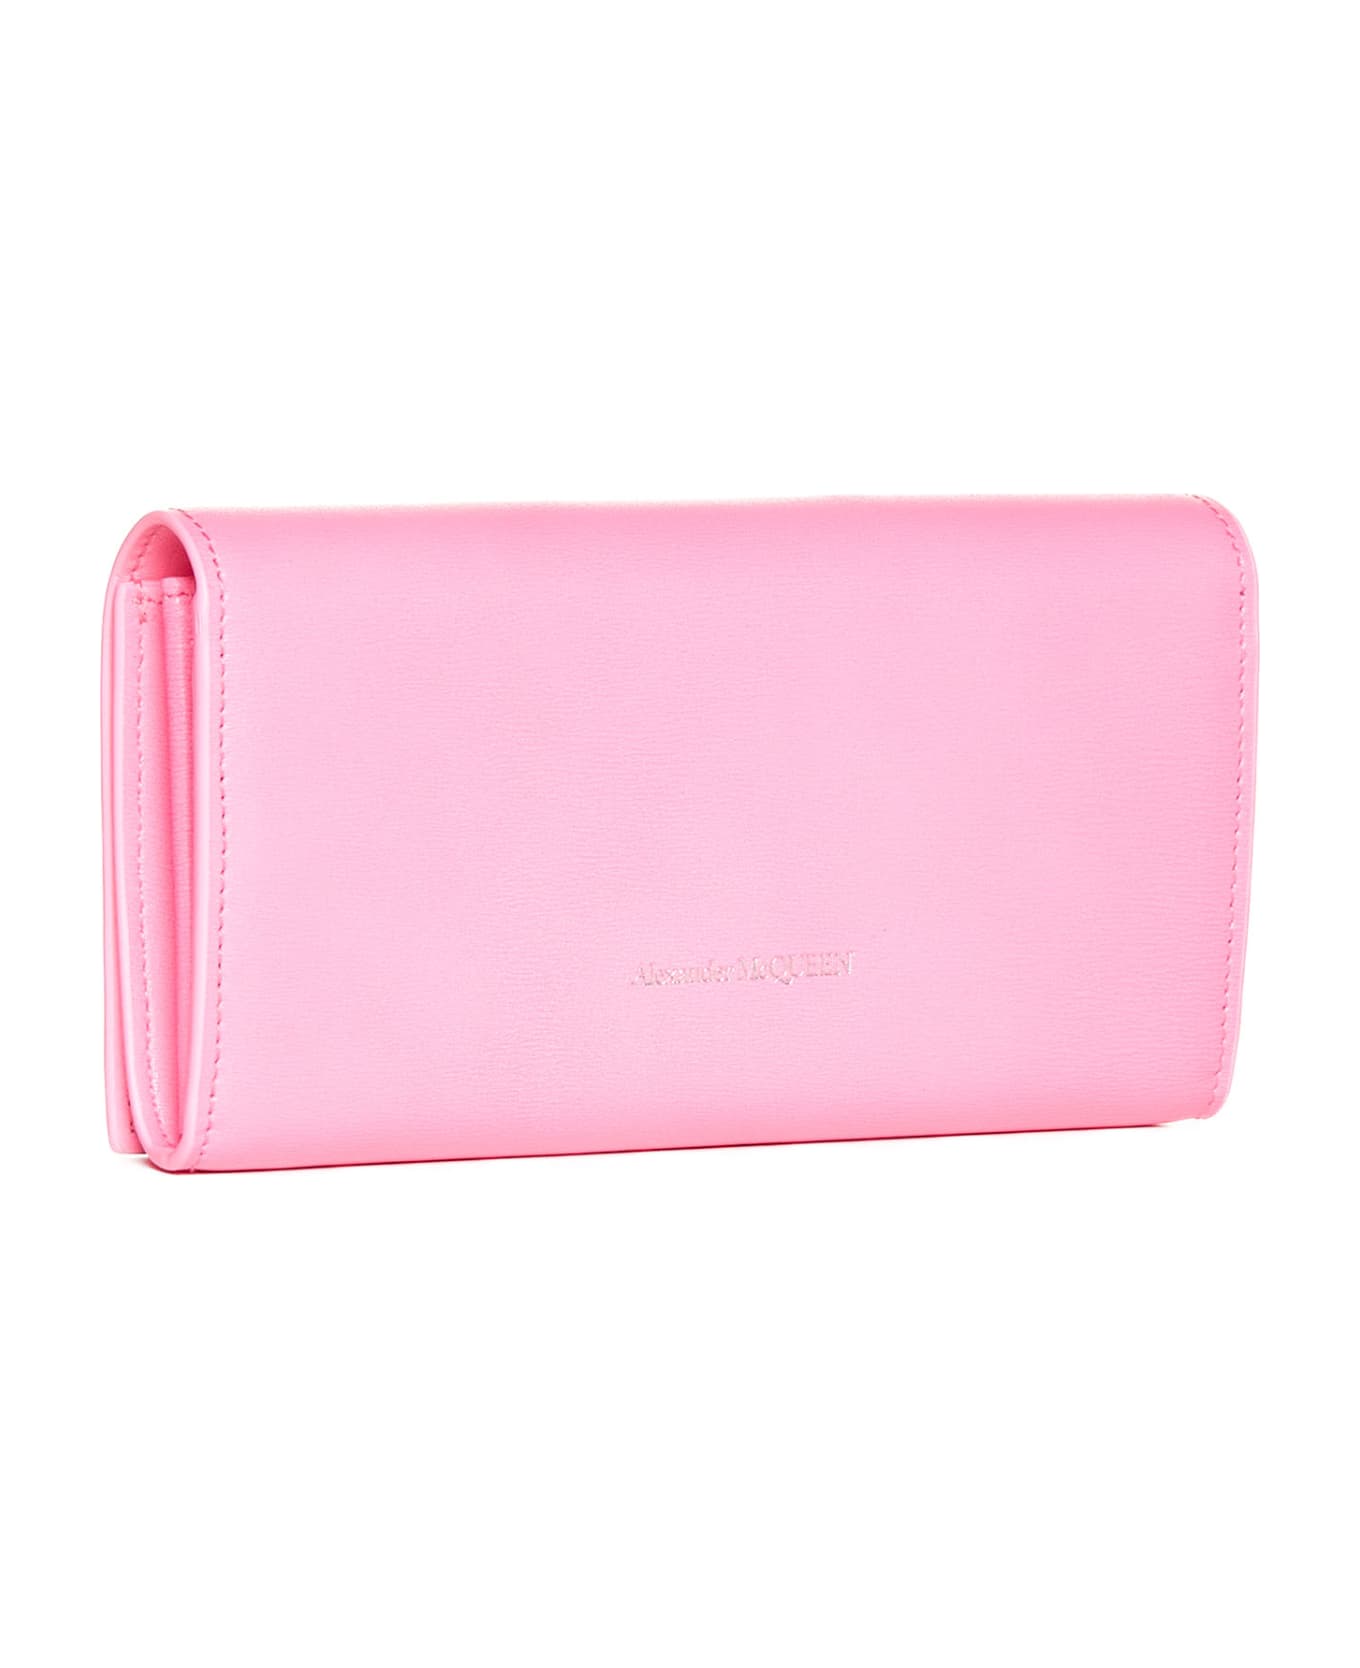 Alexander McQueen Leather Wallet - Fluo pink